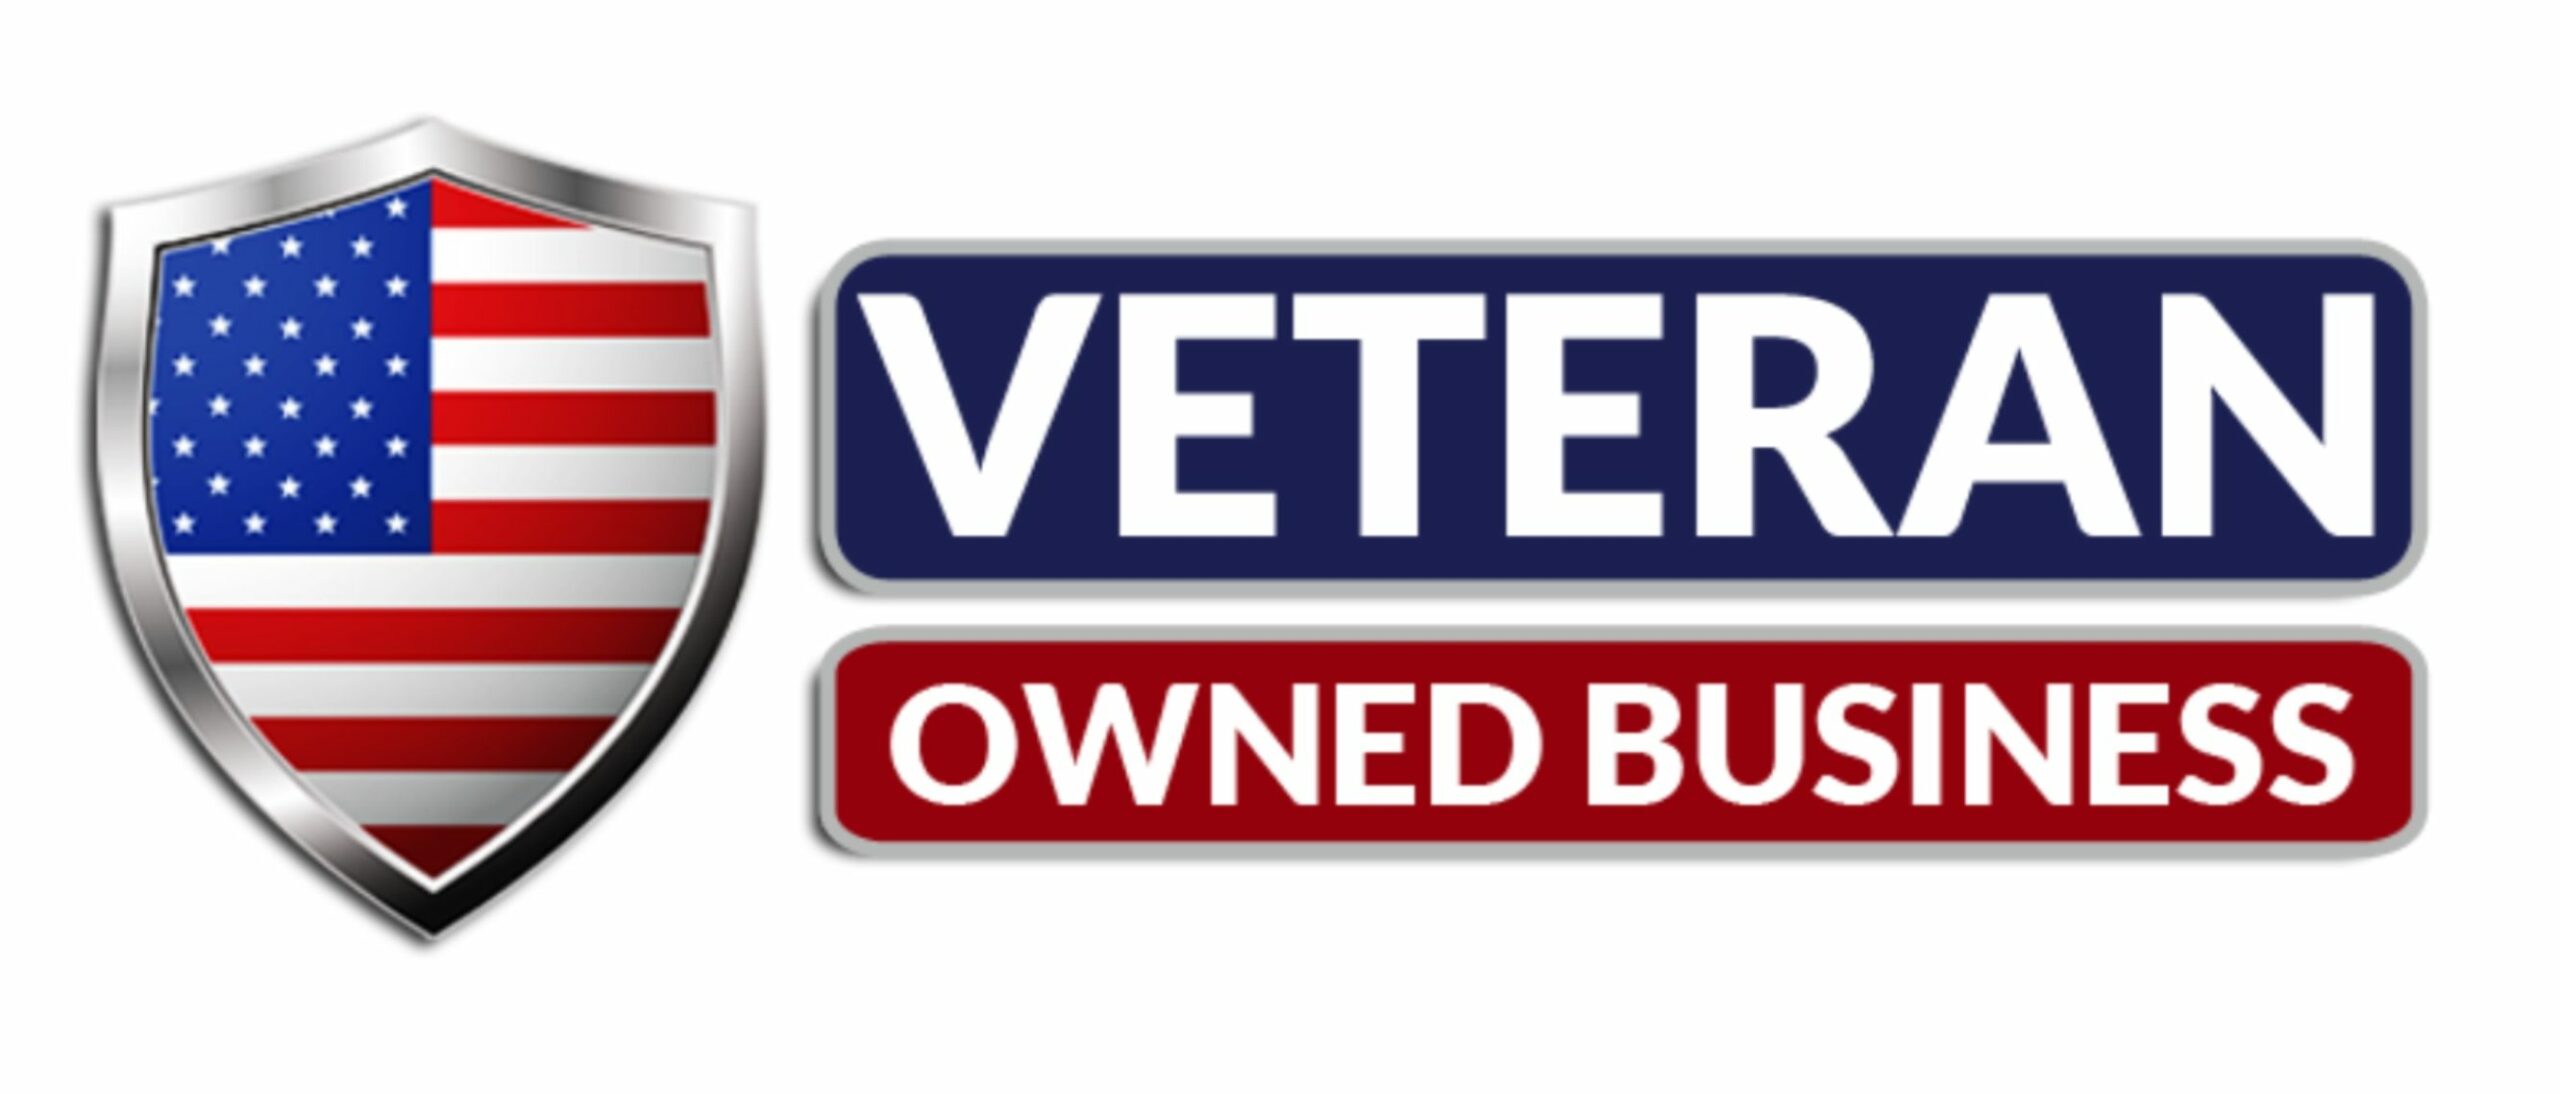 veteran-owned-business-logo-same-as-krueger-e1523570269938